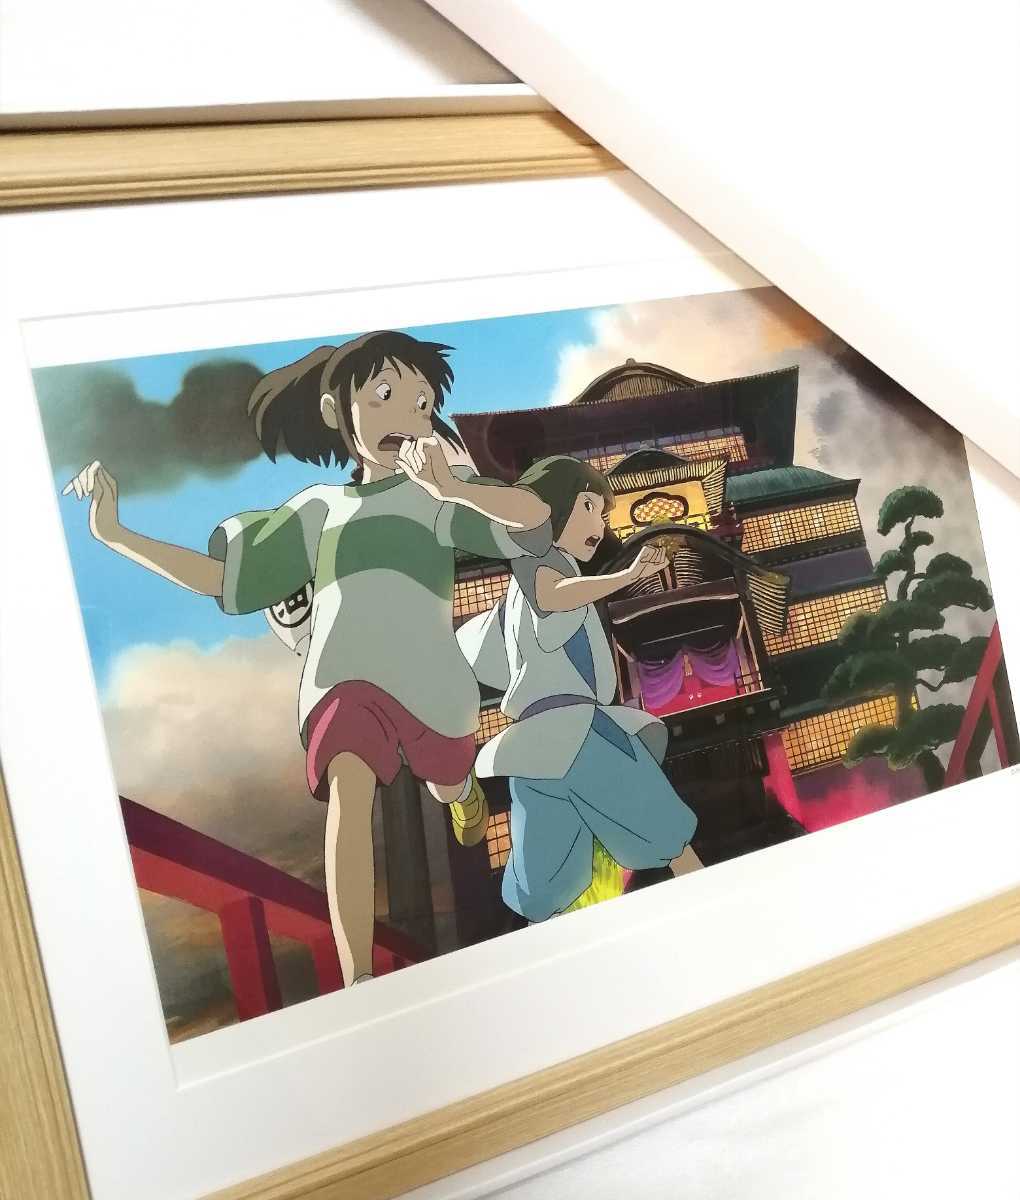 Супер редкость! Студия Ghibli Spirited Away [Предмет в рамке] Плакат Ghibli (осмотр) Оригинальная репродукция картины Ghibli, открытка. Календарь Гибли. Хаяо Миядзаки, комиксы, аниме товары, другие